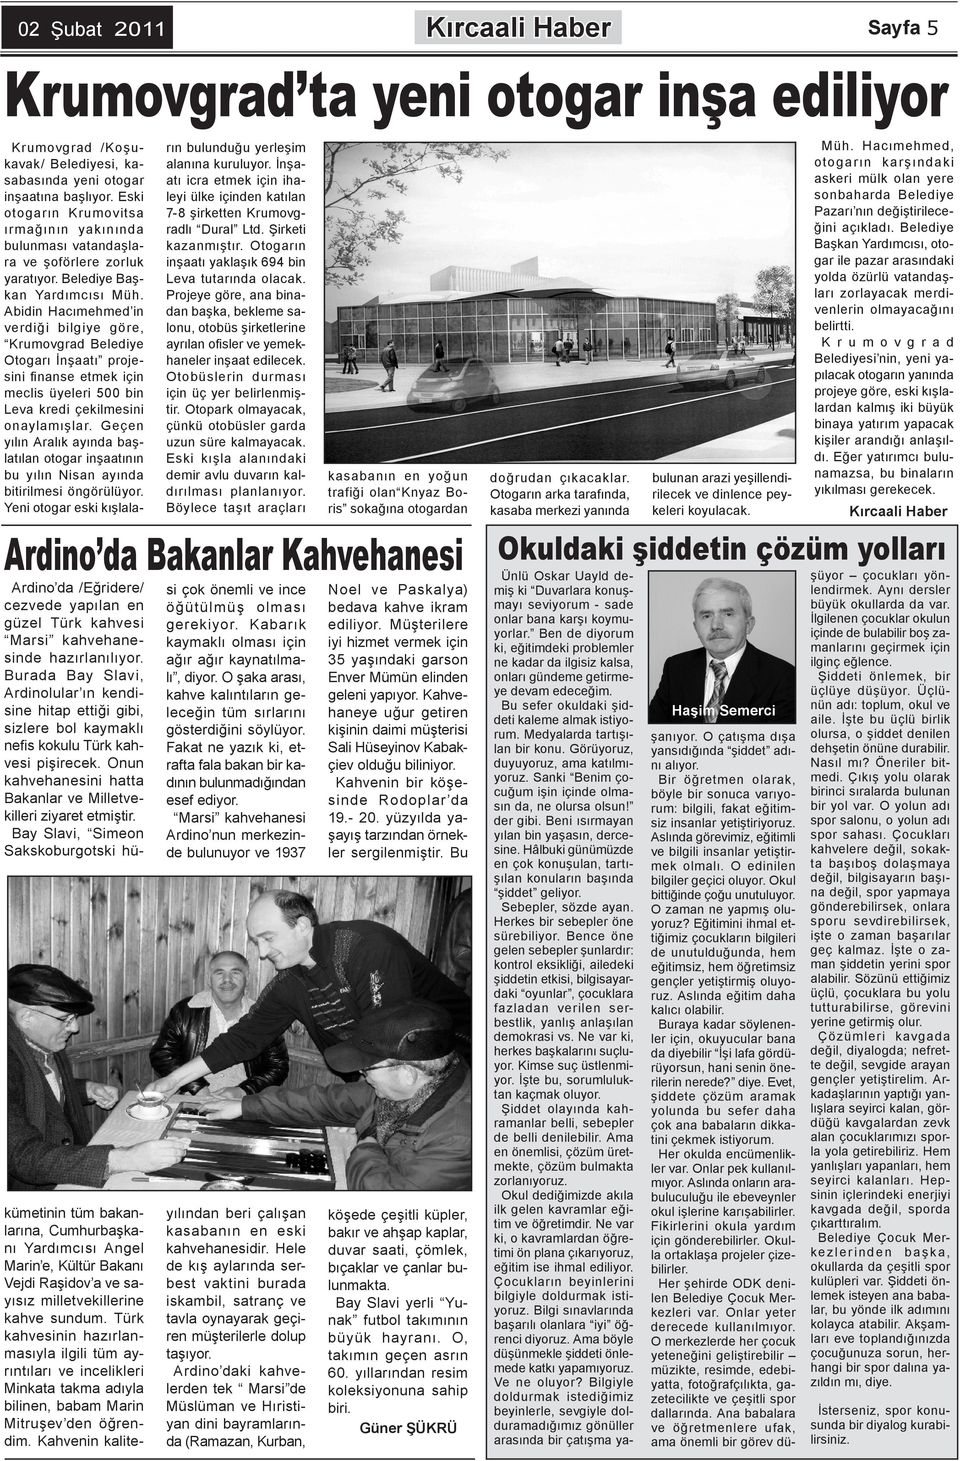 Abidin Hacımehmed in verdiği bilgiye göre, Krumovgrad Belediye Otogarı İnşaatı projesini finanse etmek için meclis üyeleri 500 bin Leva kredi çekilmesini onaylamışlar.